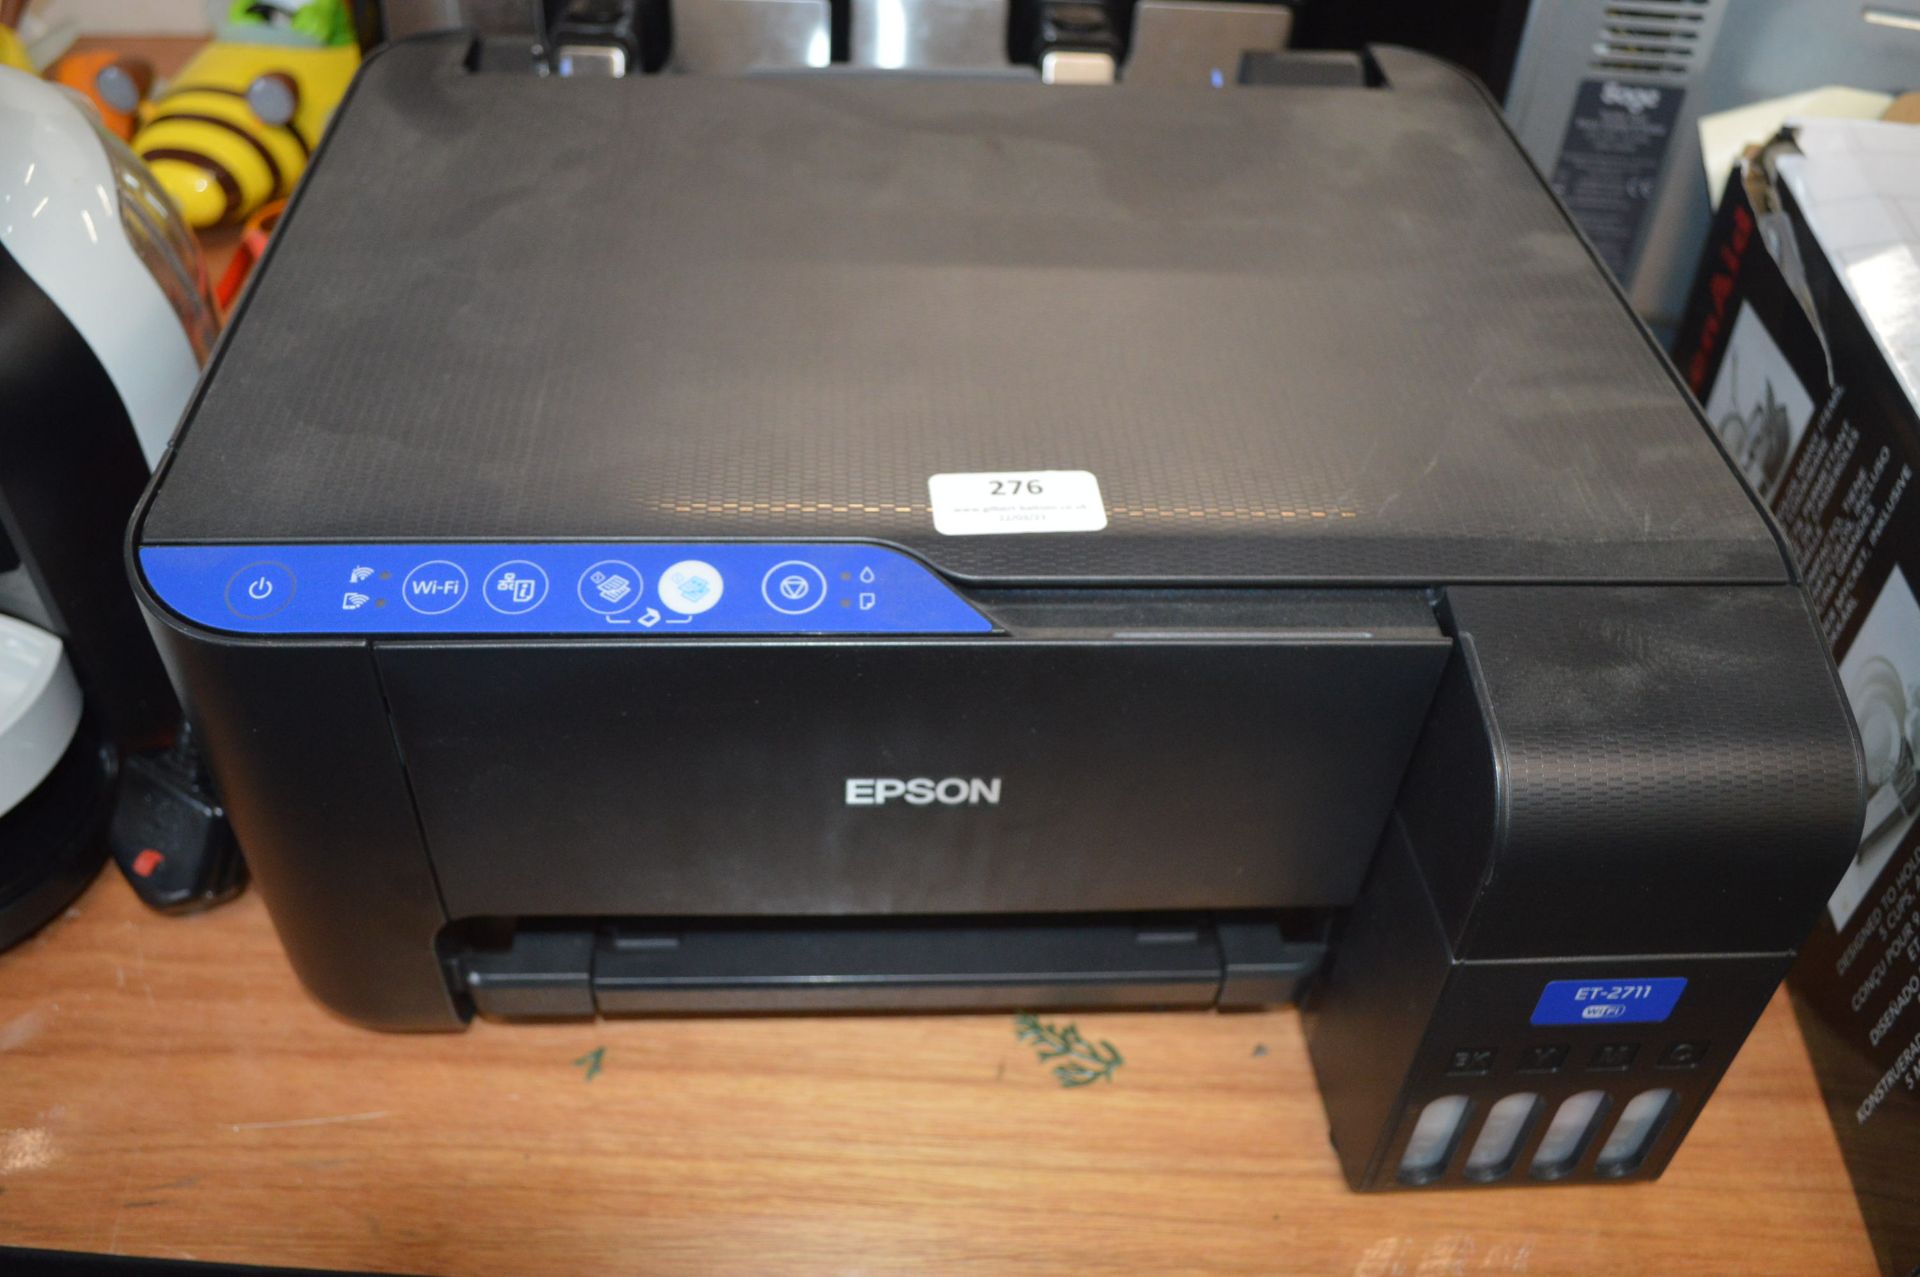 *Epson ET2711 Wi-Fi Printer